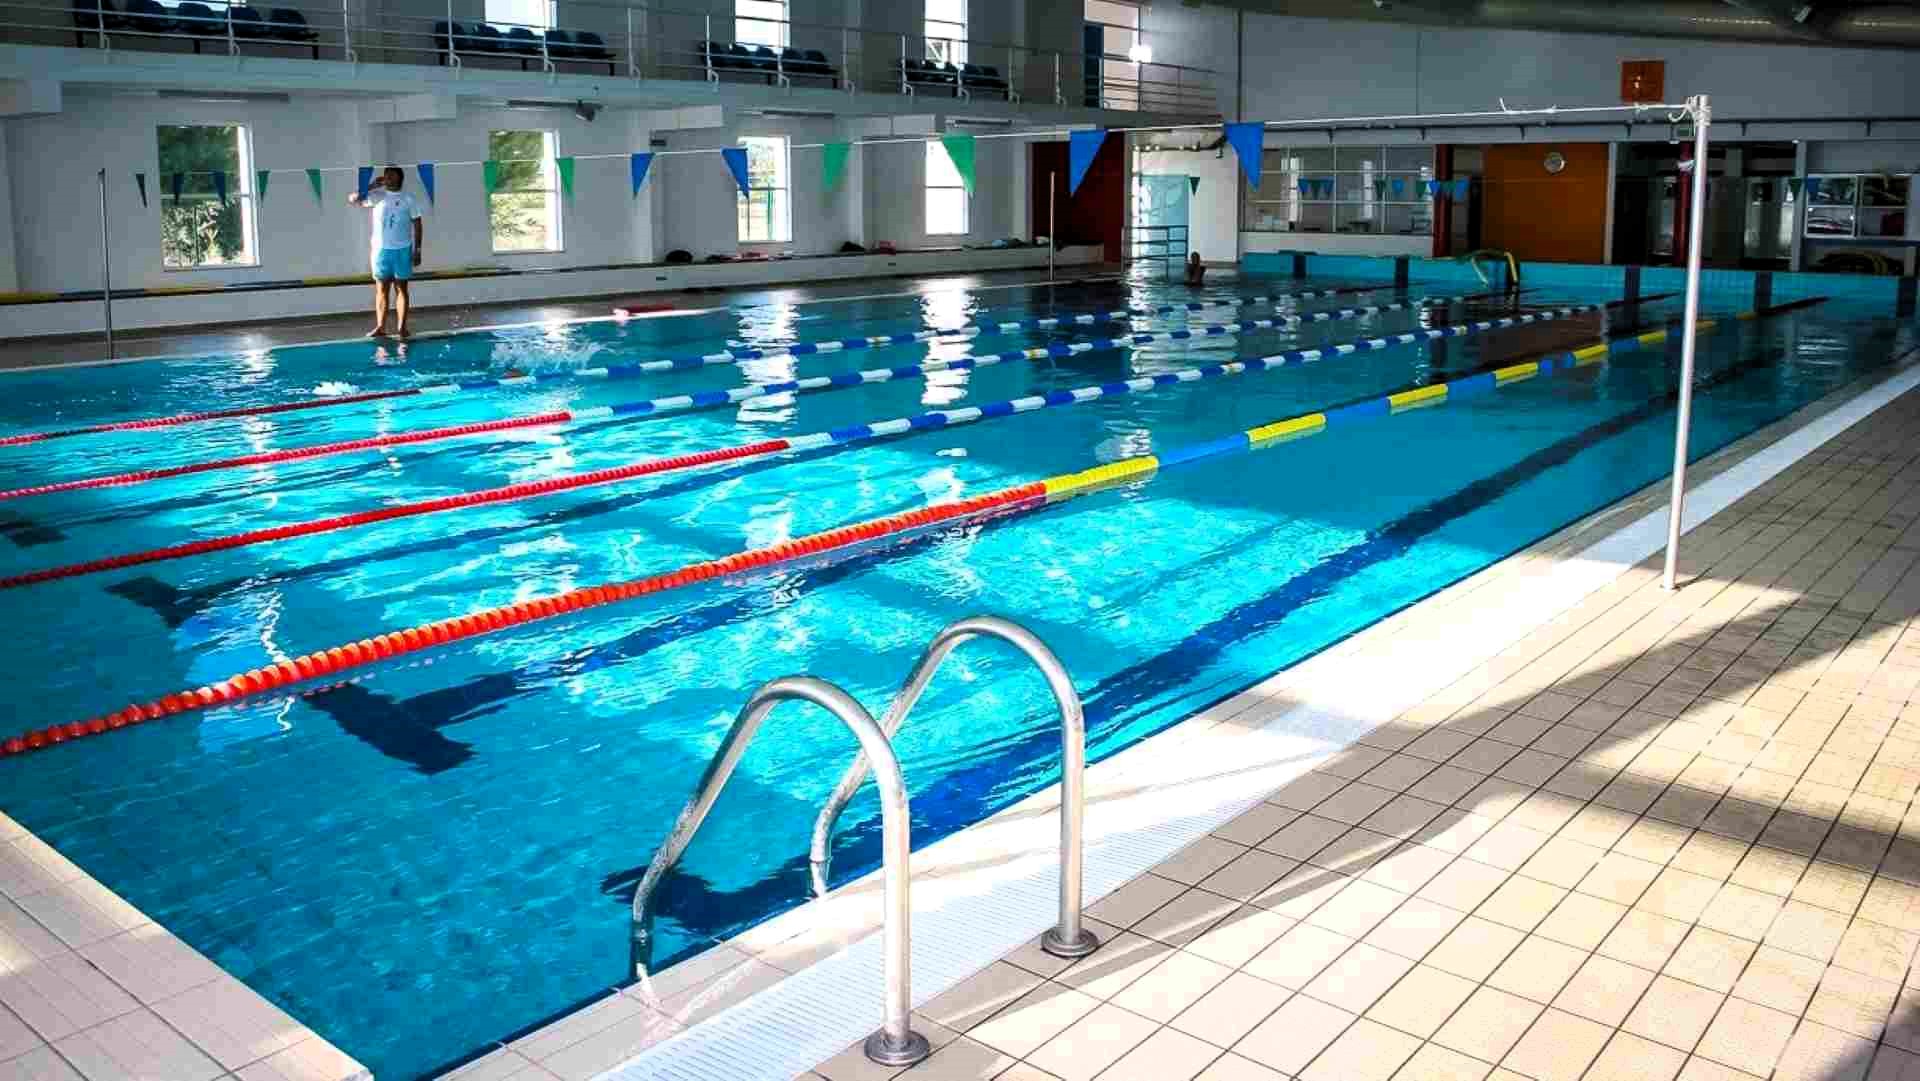 Concurso público para requalificação dos balneários da piscina coberta de Beja